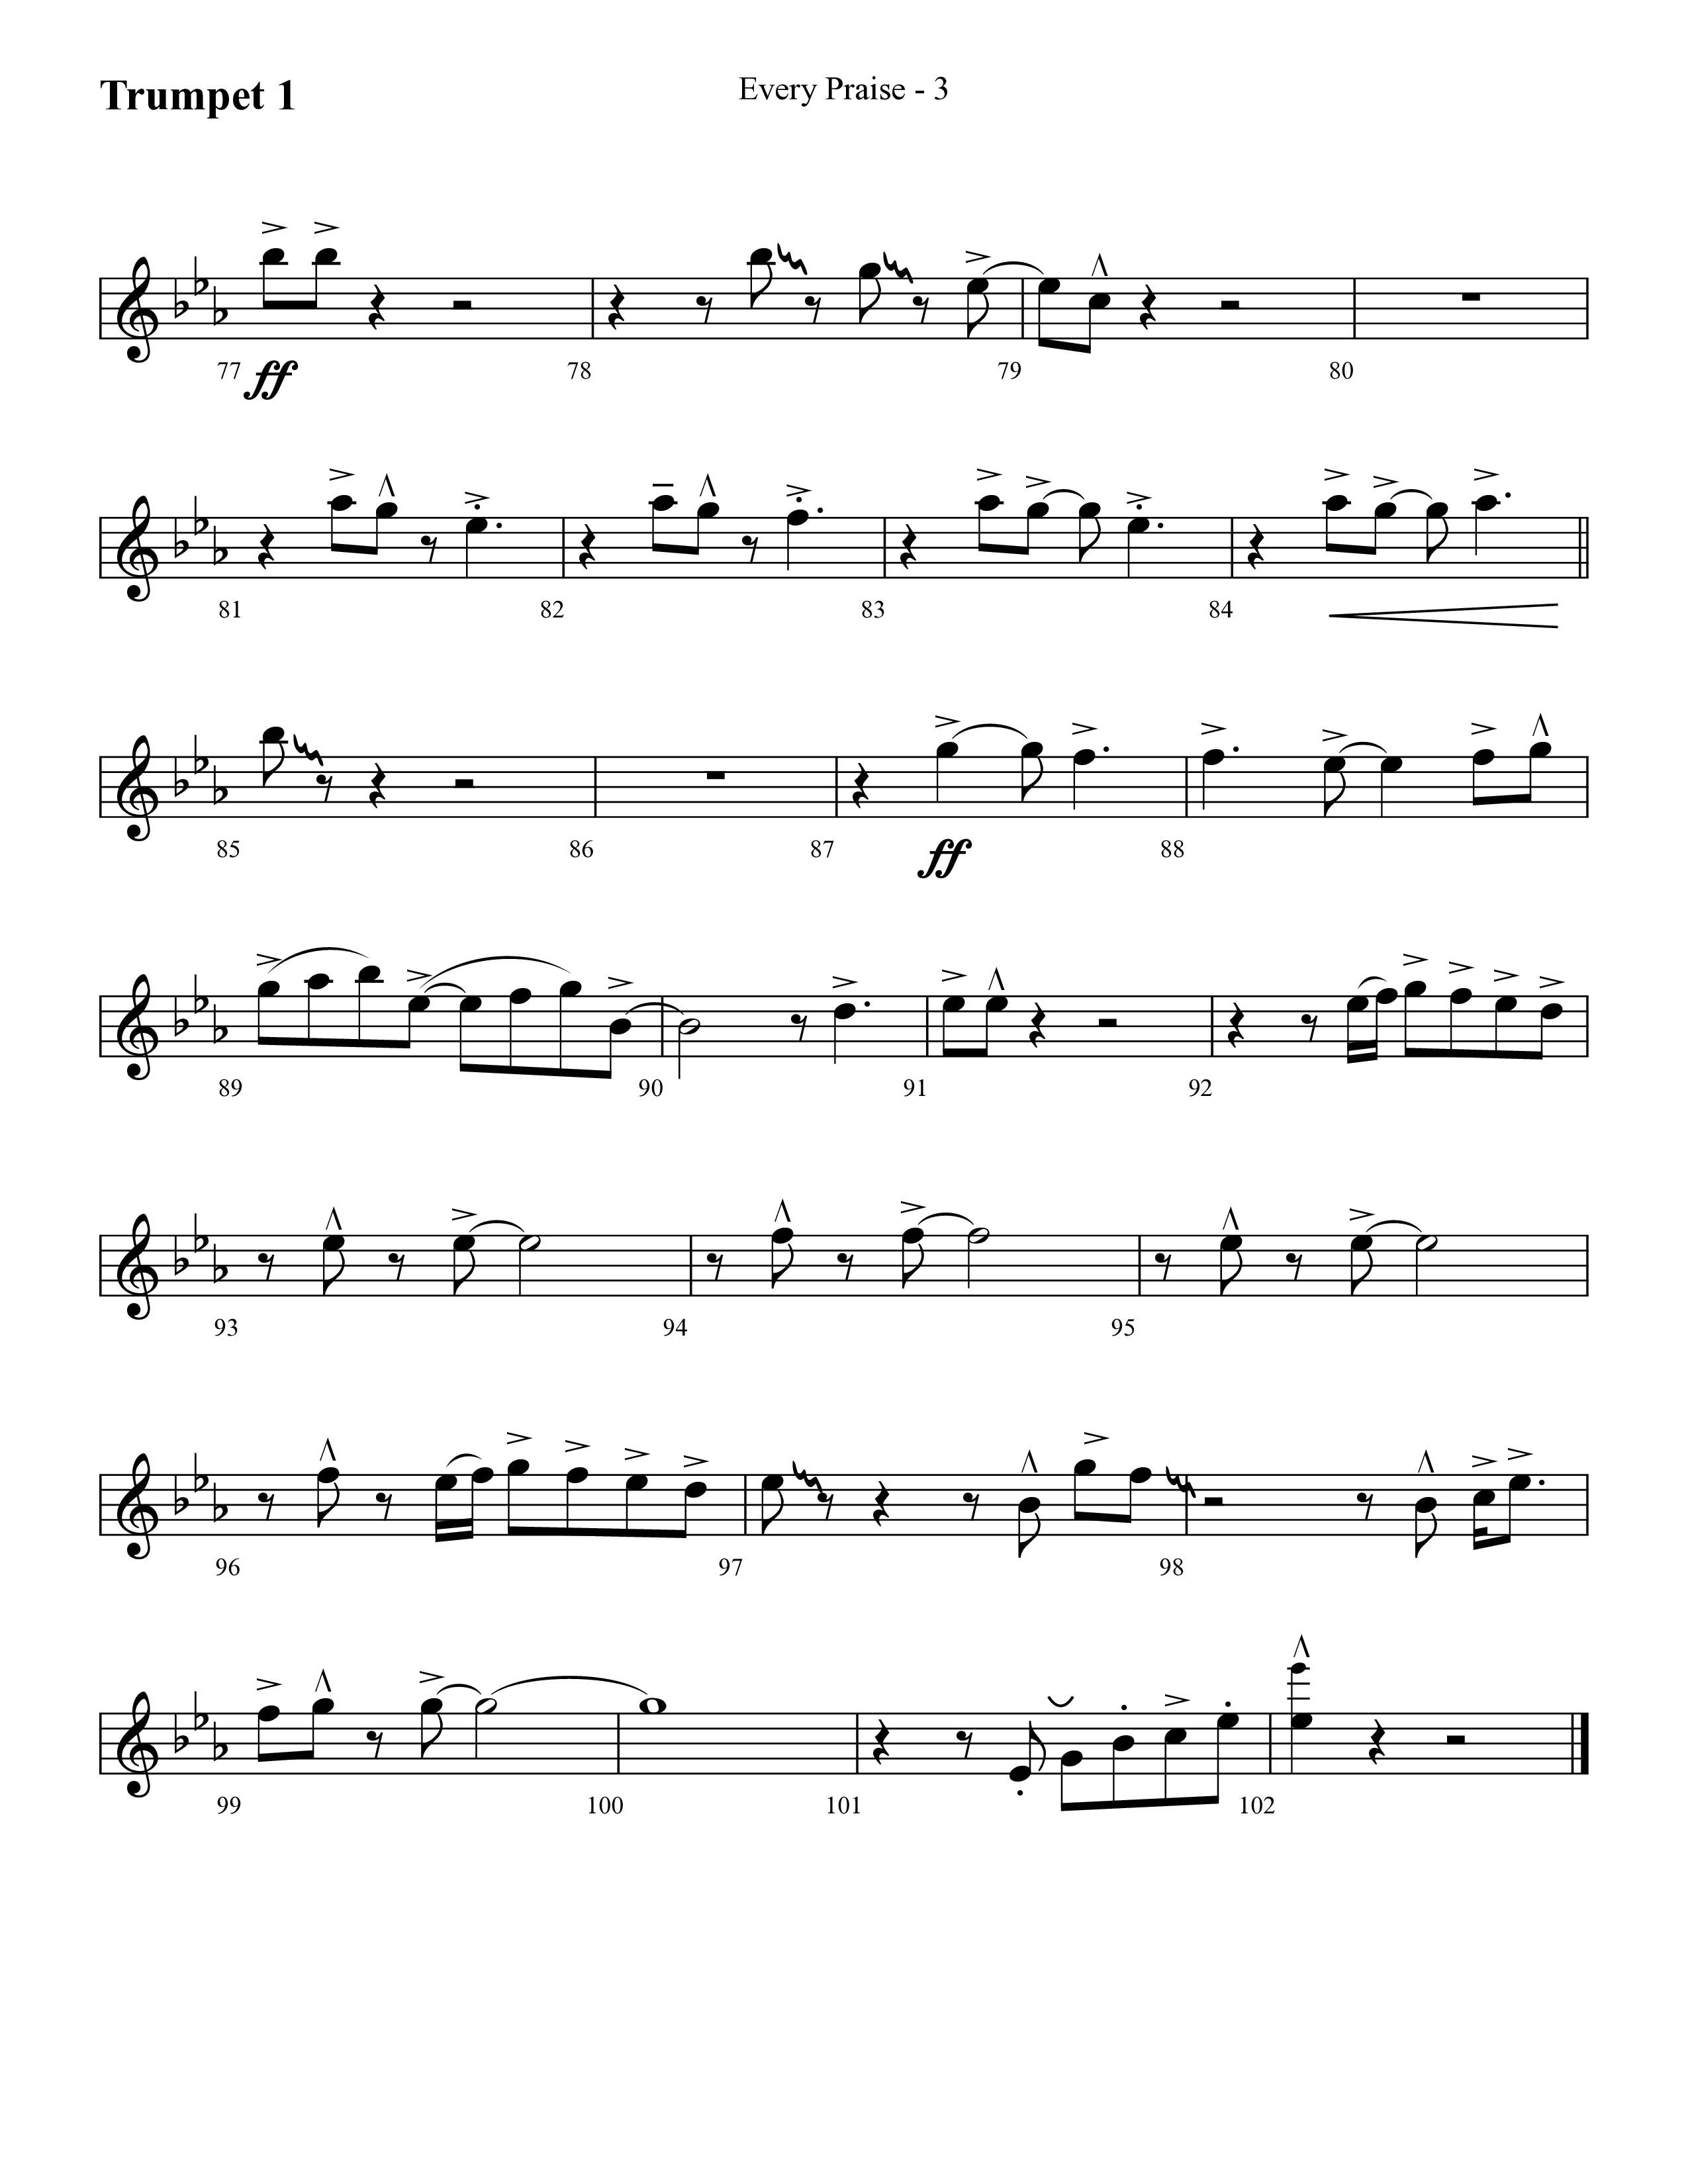 Every Praise (Choral Anthem SATB) Trumpet 1 (Lifeway Choral / Arr. Cliff Duren)